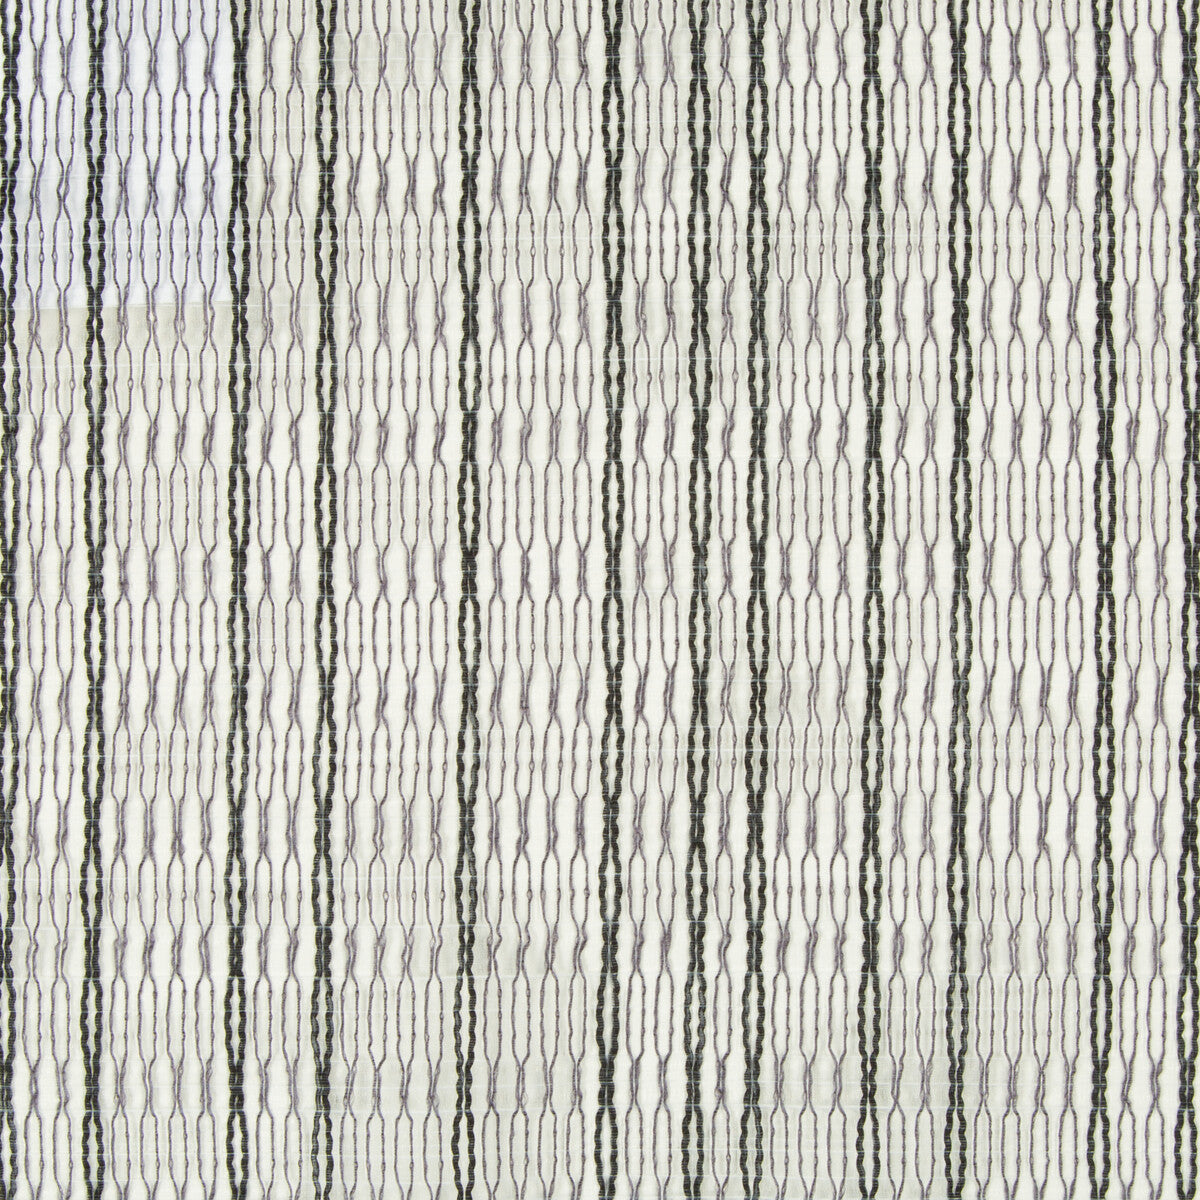 Kravet Basics fabric in 4302-21 color - pattern 4302.21.0 - by Kravet Basics